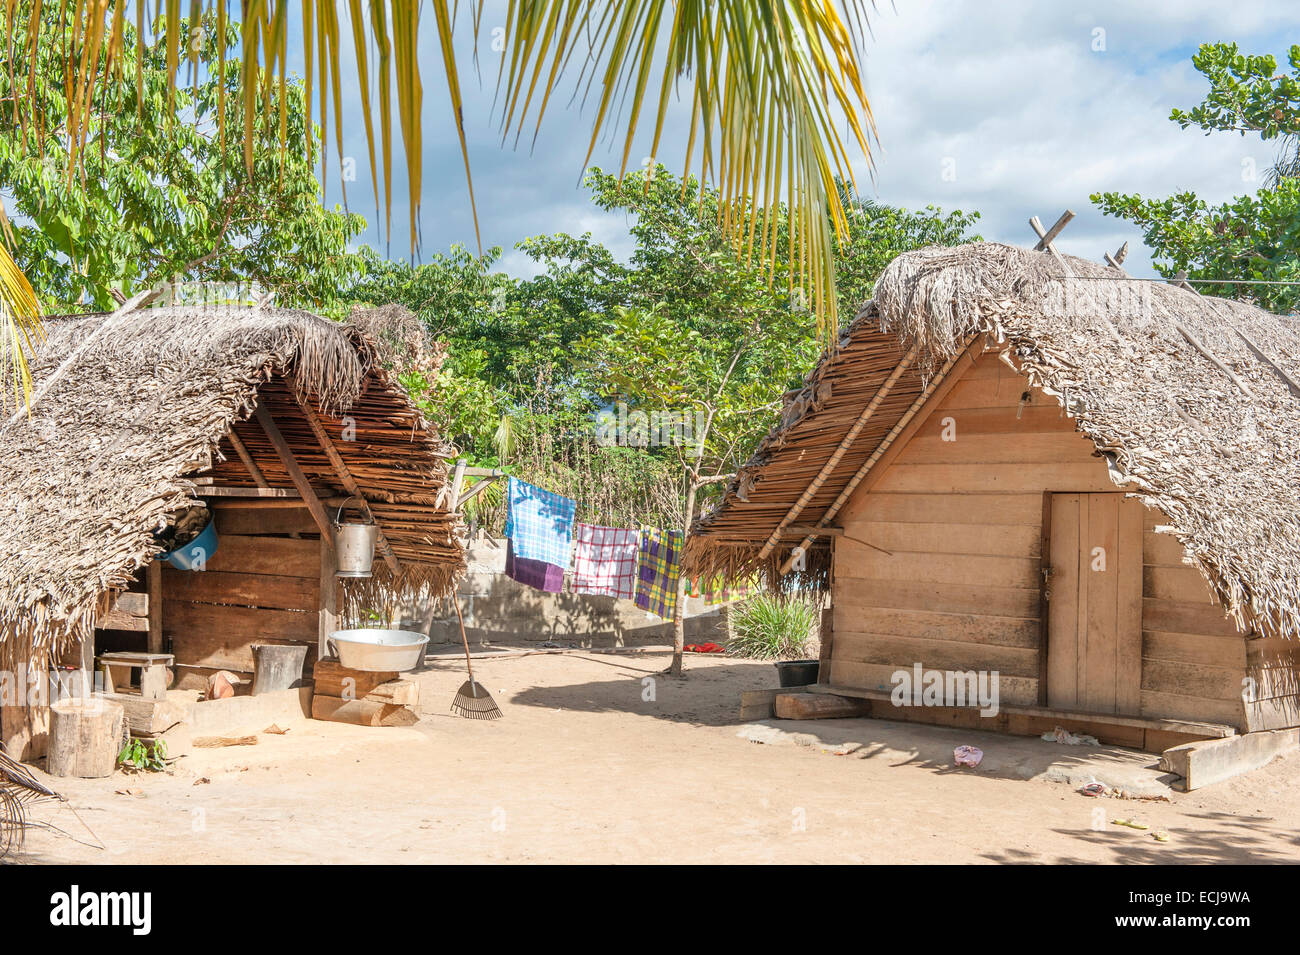 Cabañas tradicionales de madera con techos de palma en la aldea de granate,  Boven-Suriname Goejaba, Suriname Fotografía de stock - Alamy